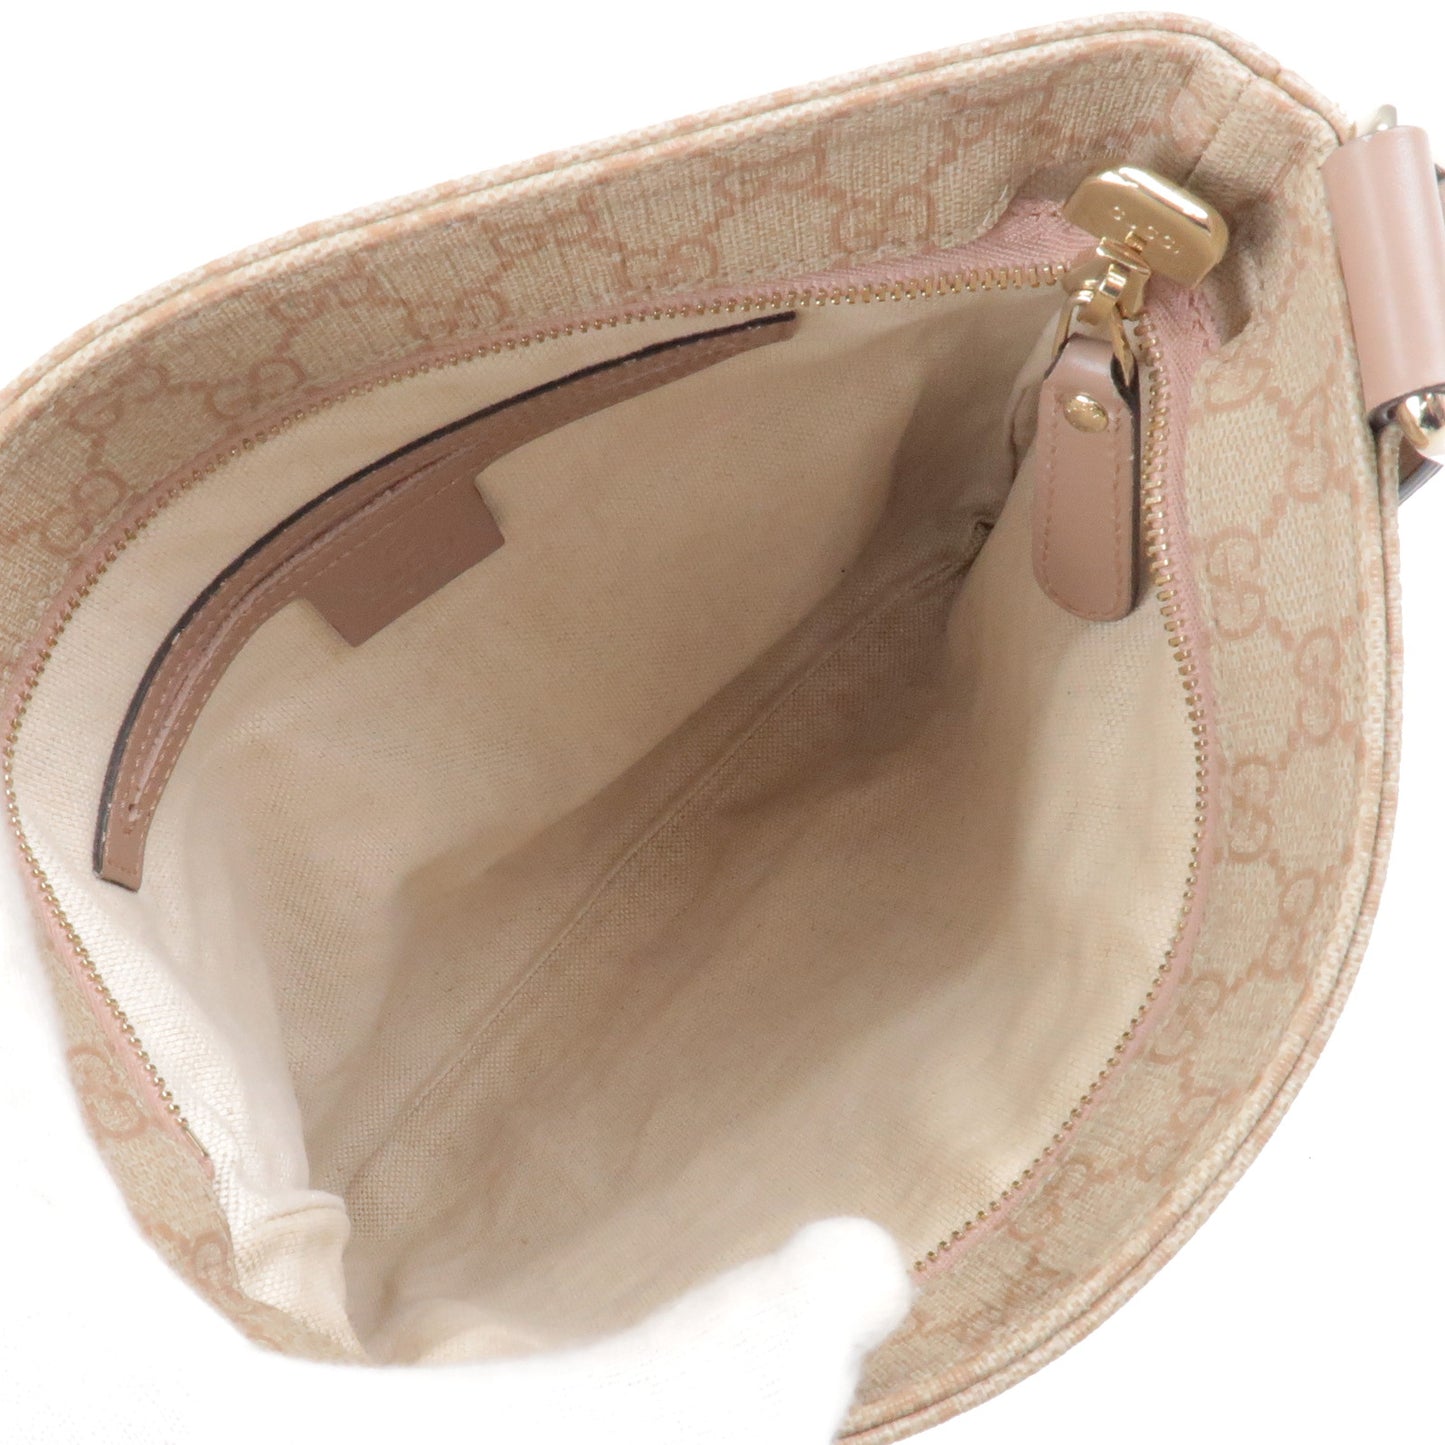 GUCCI GG Supreme Leather Shoulder Bag Purse Pink Beige 295257